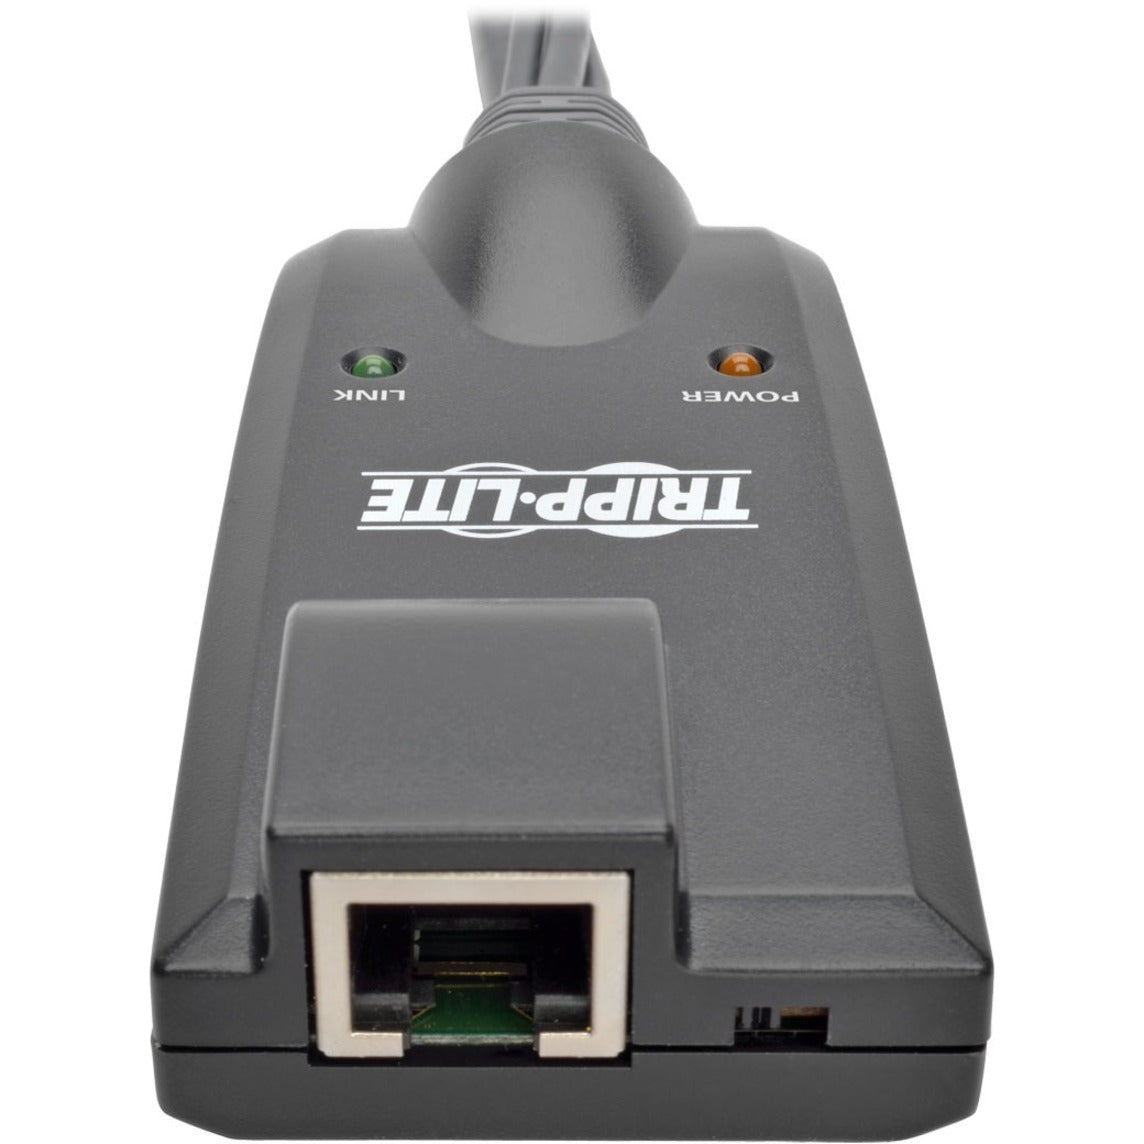 Tripp Lite: Tripp Lite B055-001-USB-VA NetDirector Unidad de Interfaz de Servidor USB Extensor KVM con Puertos USB VGA Auriculares Micrófono y Red (RJ-45)